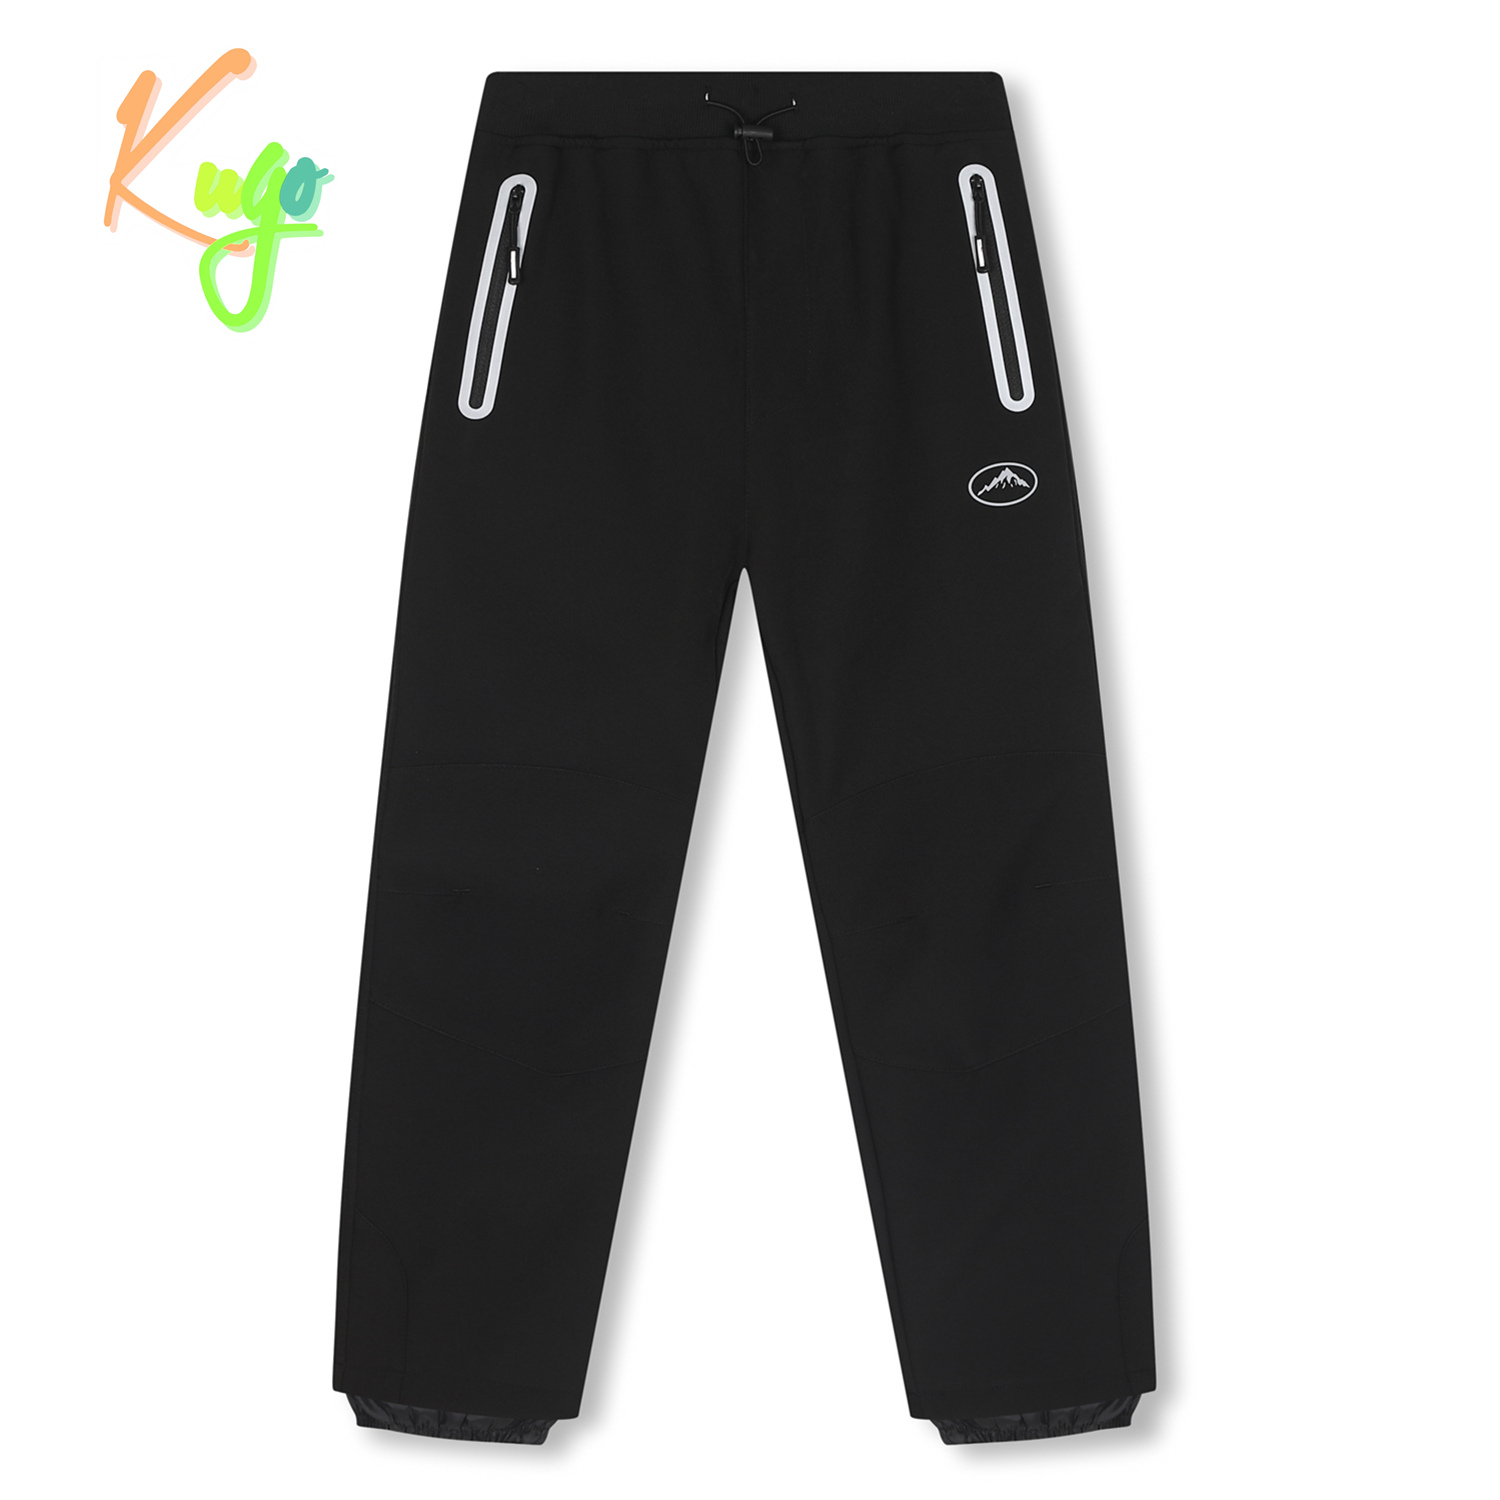 Chlapecké softshellové kalhoty, zateplené - KUGO H5517, celočerná Barva: Černá, Velikost: 146